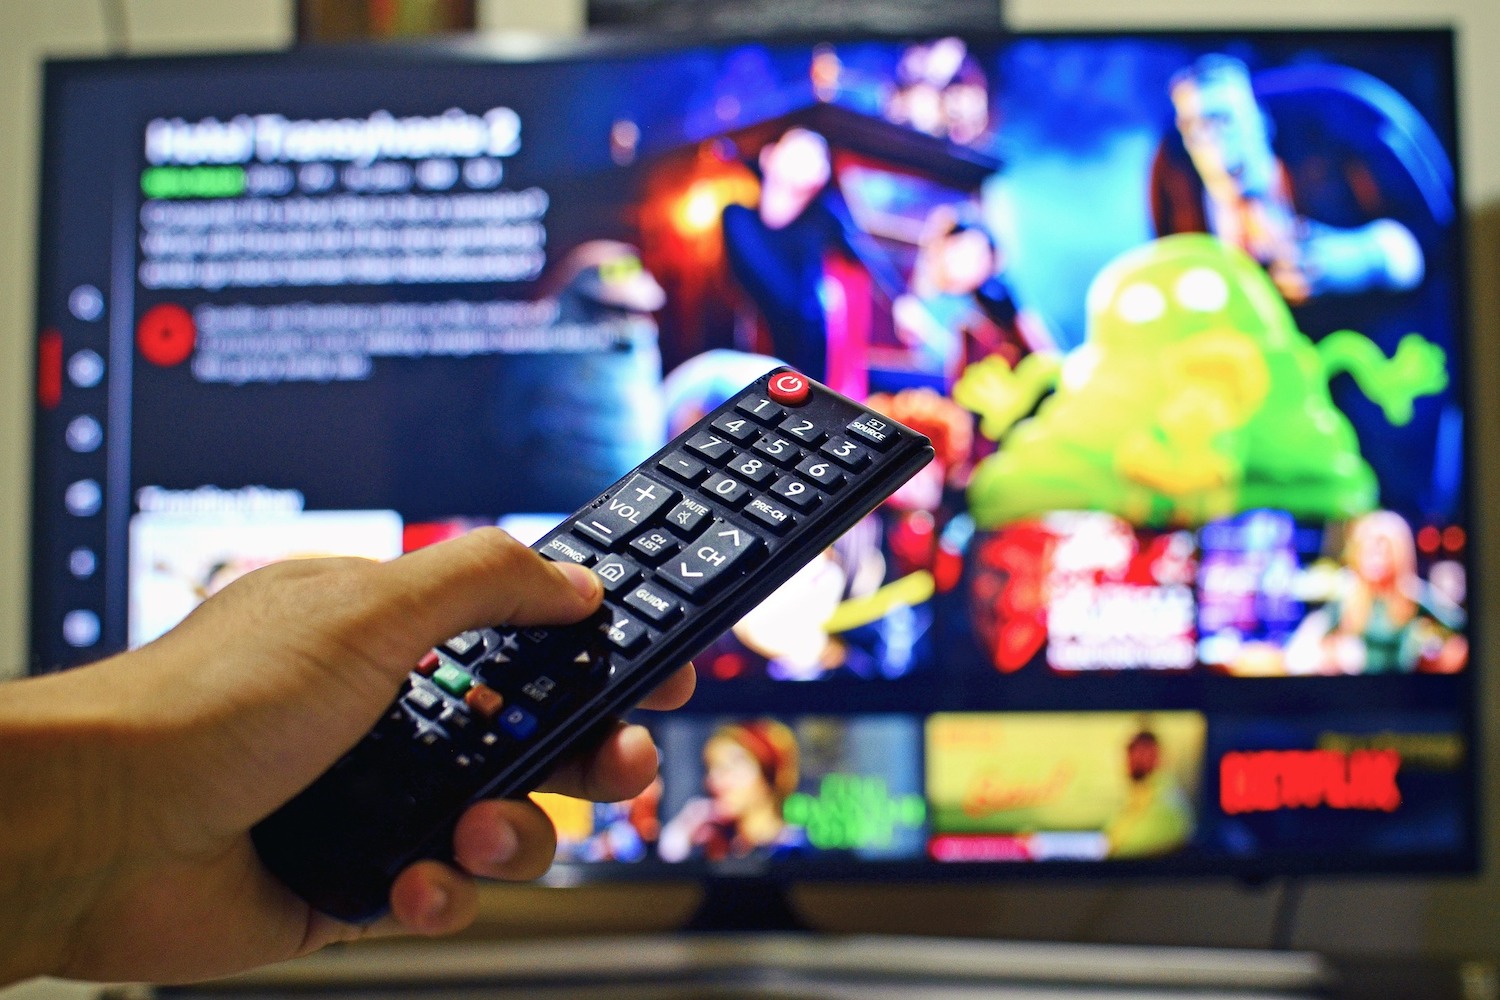 TD SYSTEMS Smart TV Guía definitiva Configuraciones y Funciones 